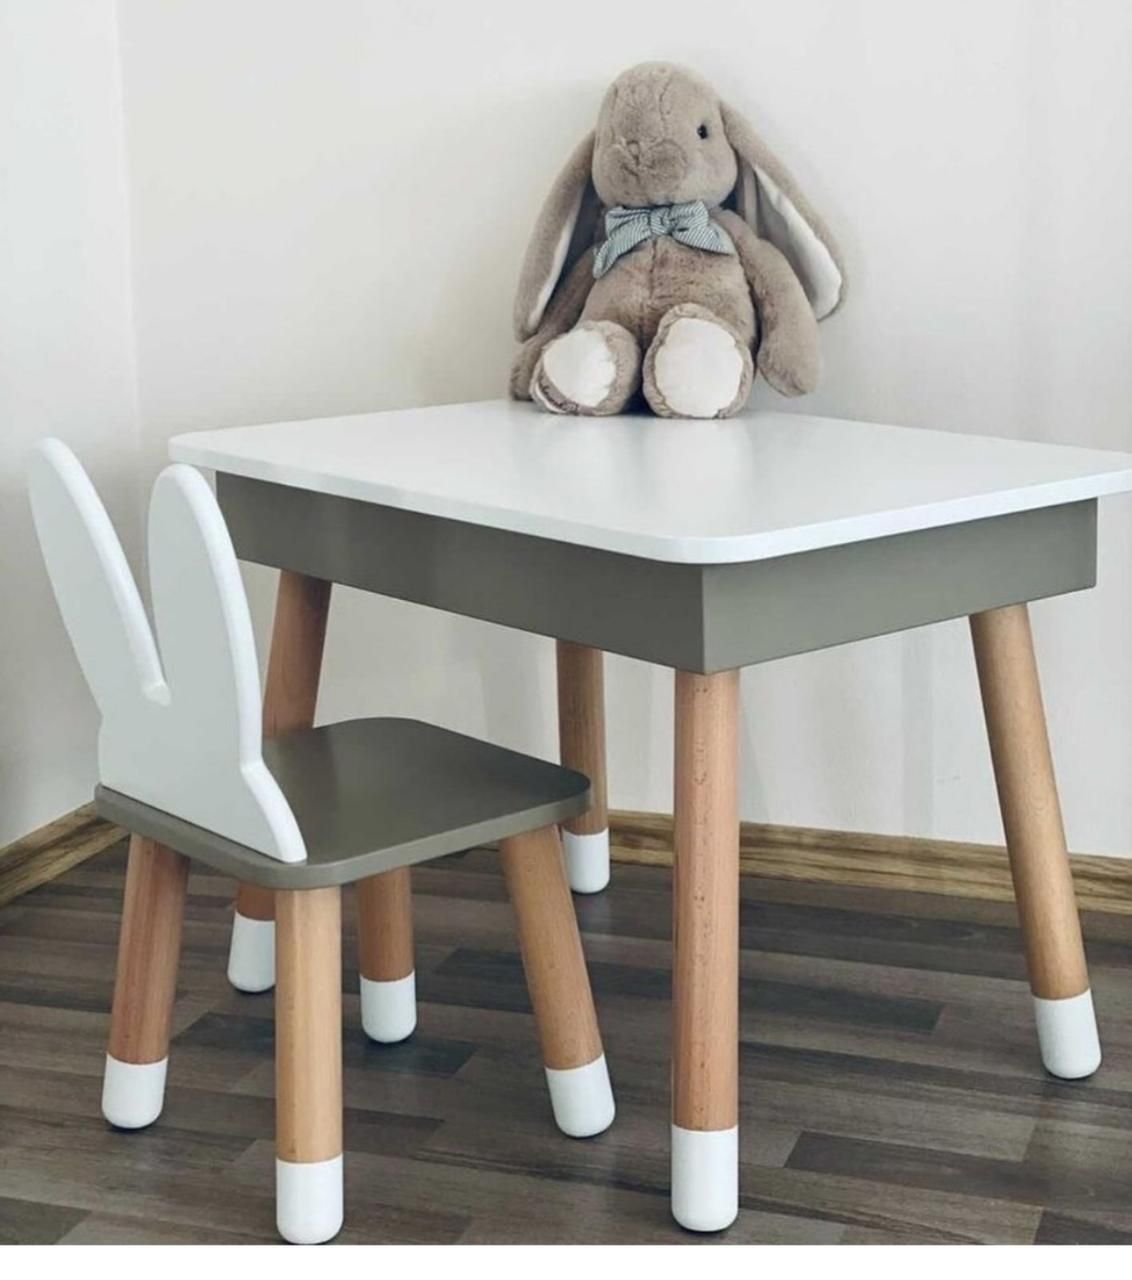 Дитячий прямокутний стіл із пеналом і 2 стільці